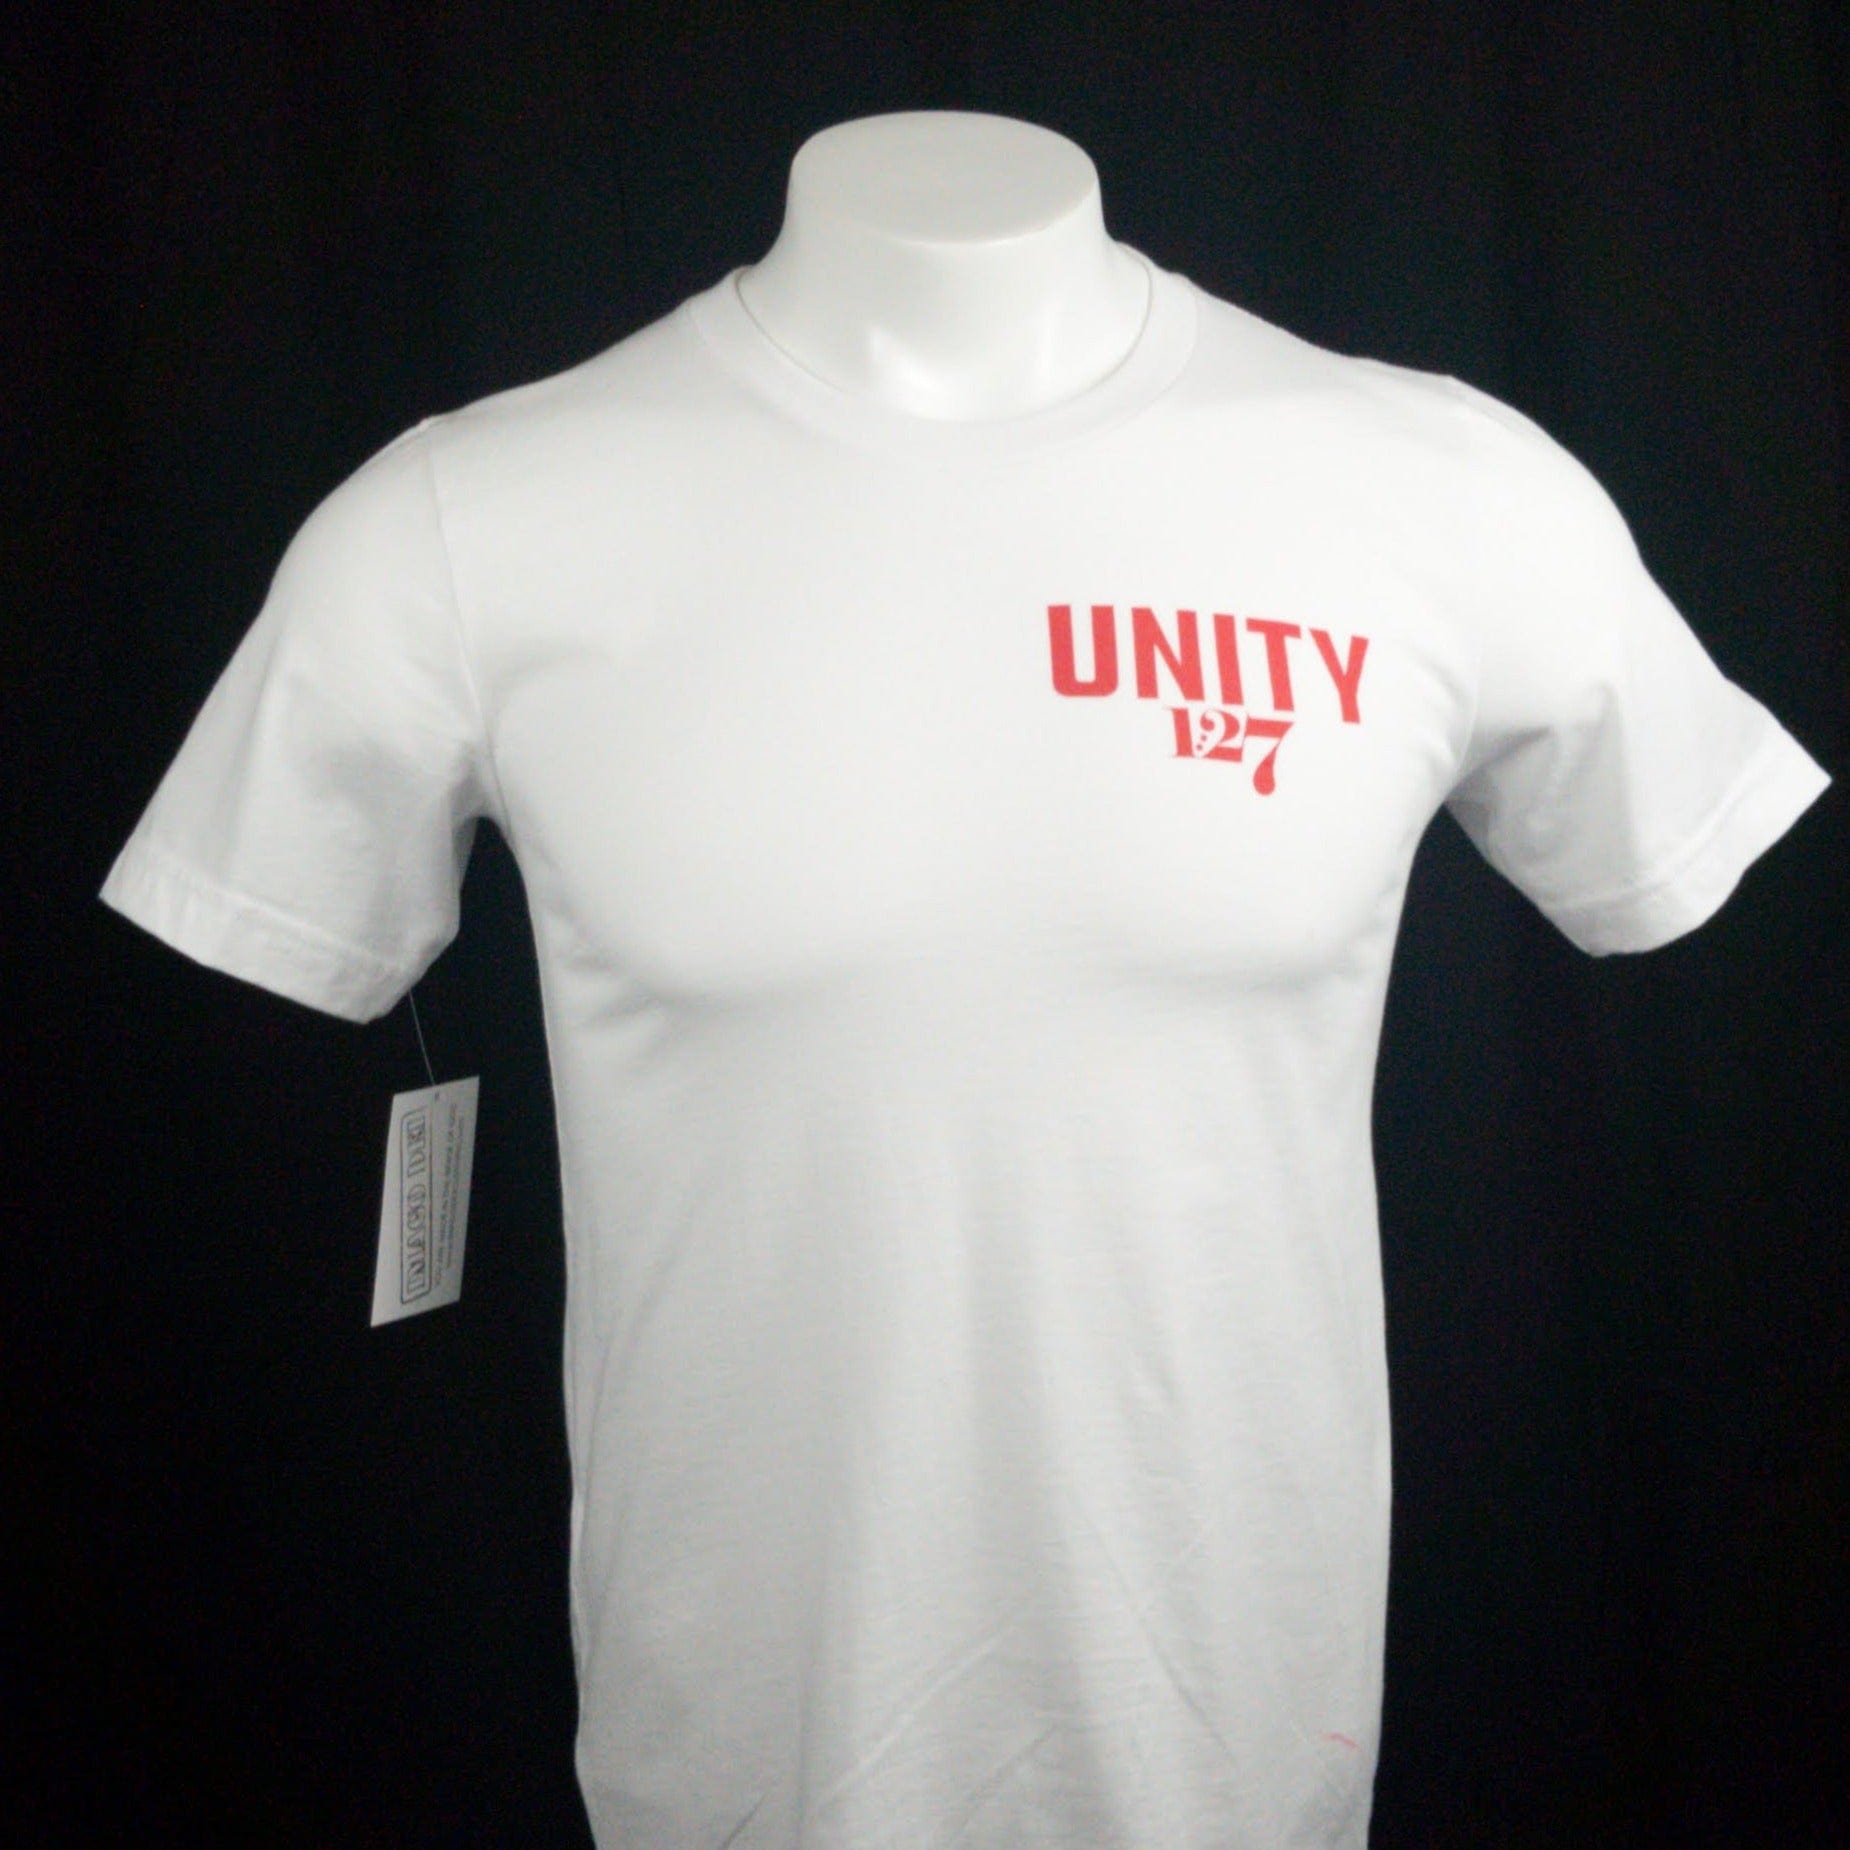 UNITY, 1:27 Clothing